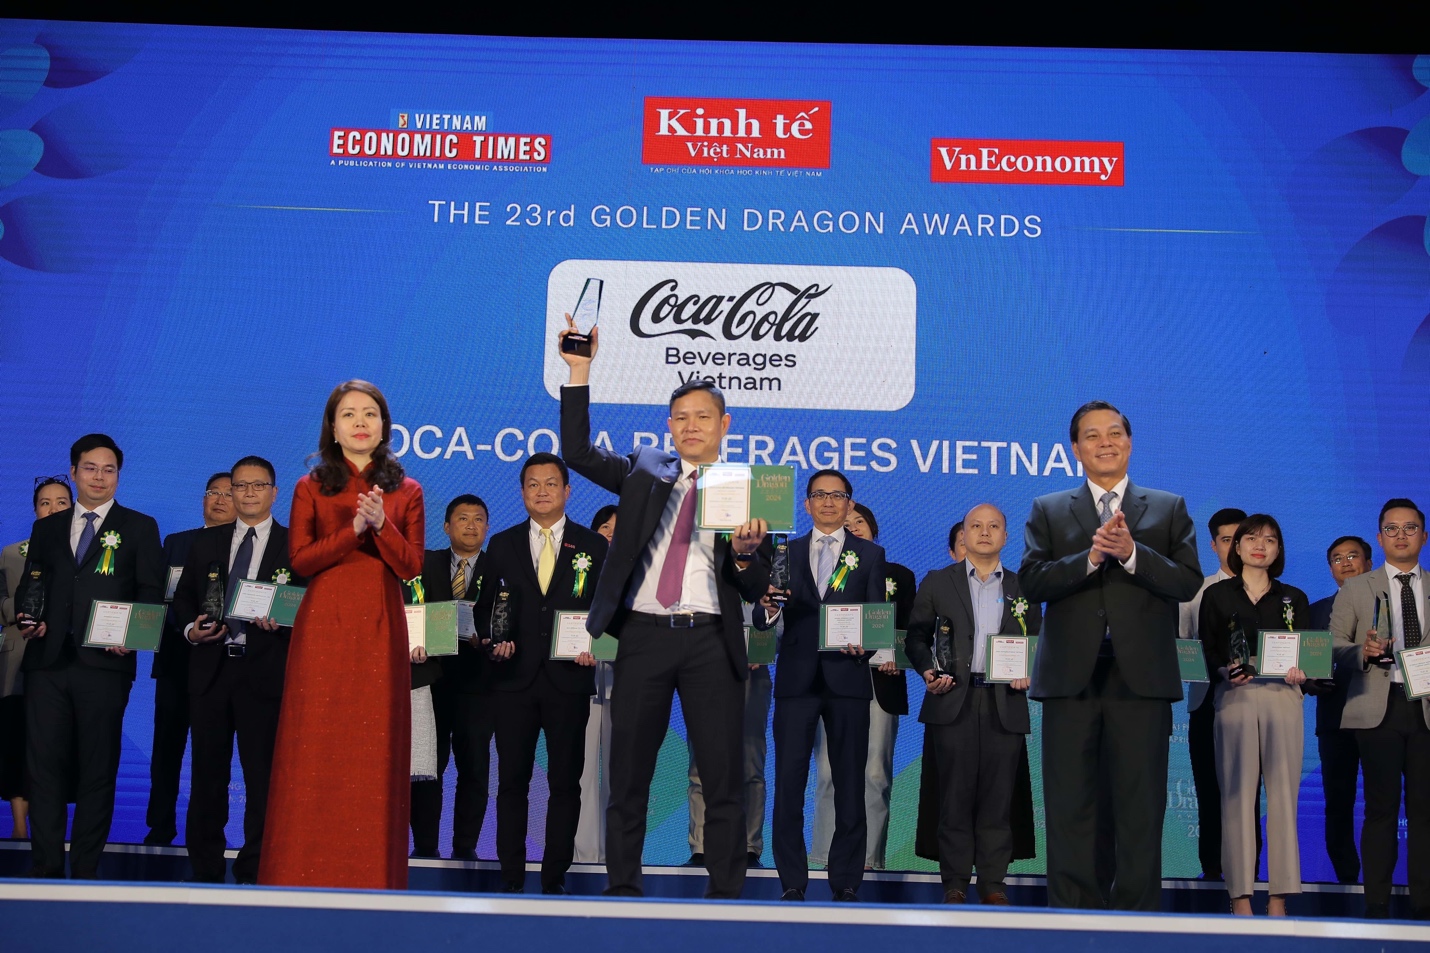 Ông Bùi Khánh Nguyên, Phó Tổng Giám đốc Đối ngoại, Truyền thông và Phát triển Bền vững, thay mặt Công ty Coca-Cola nhận giải thưởng tại Lễ trao giải Rồng Vàng lần thứ 23 tại Thành phố Hải Phòng